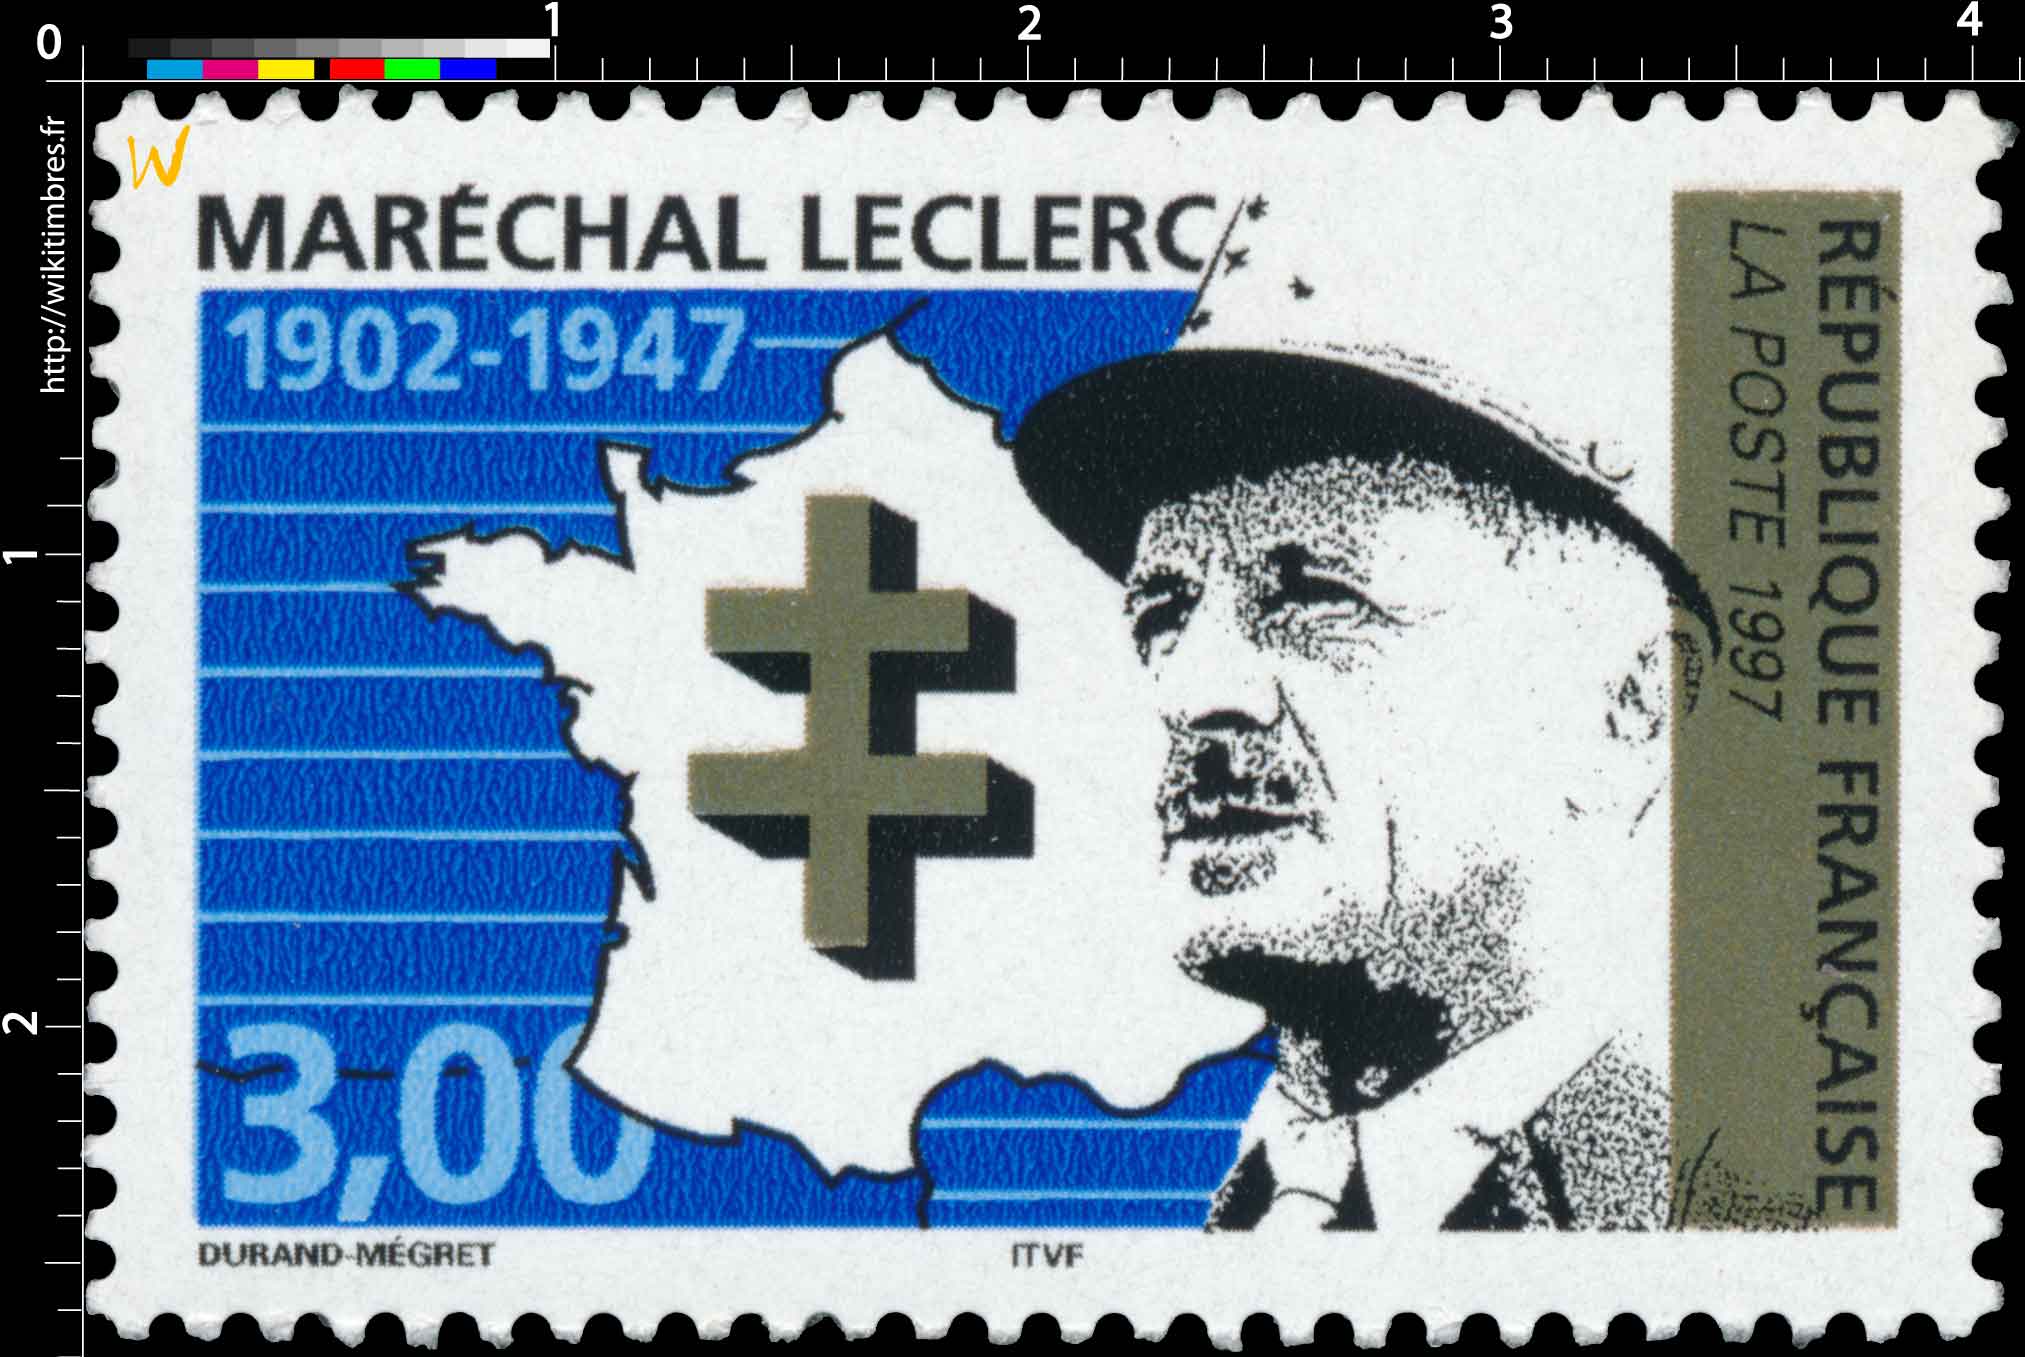 1997 MARÉCHAL LECLERC 1902-1947